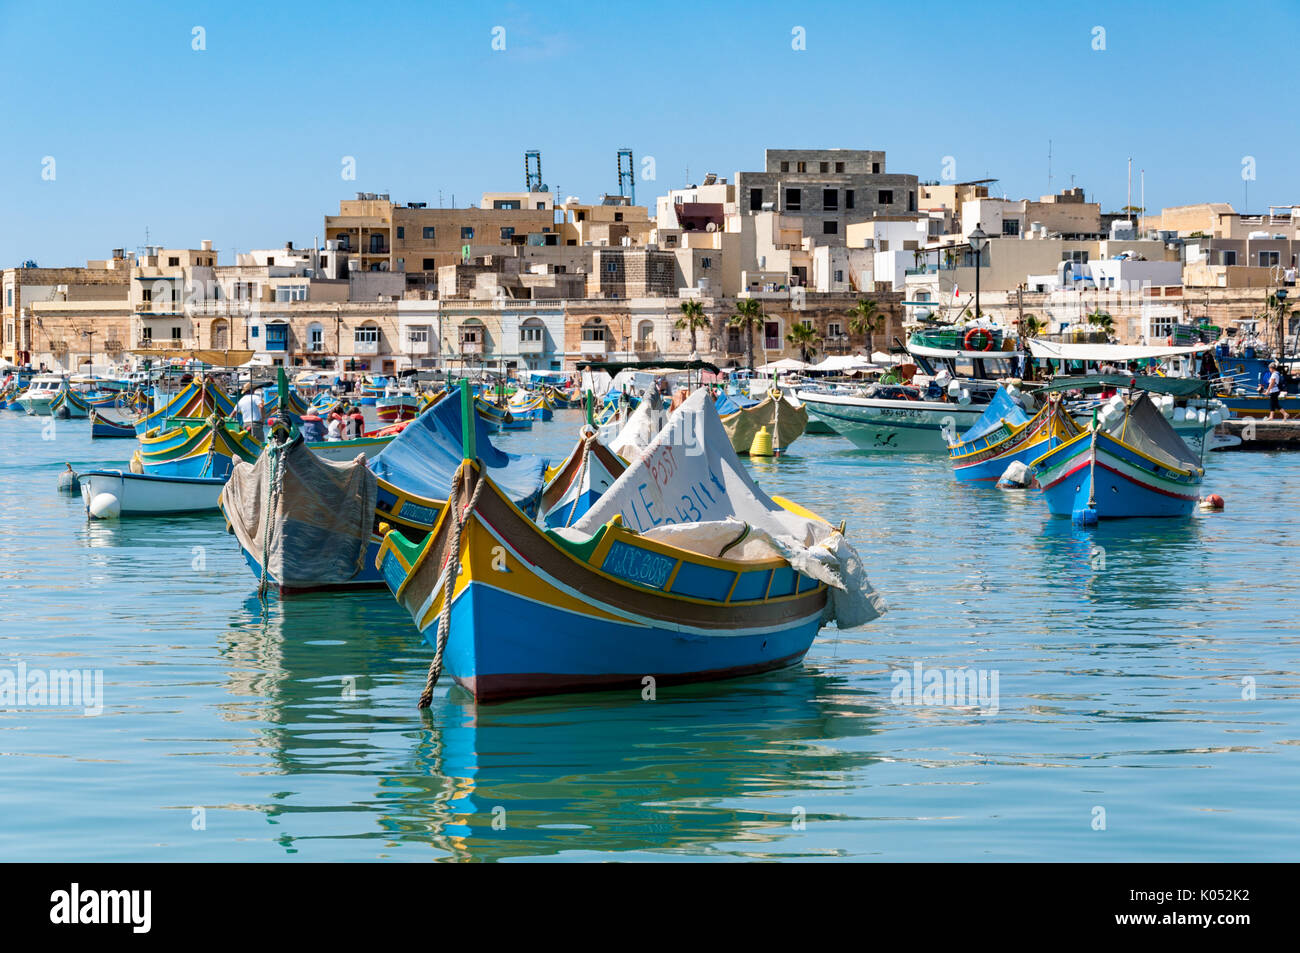 Tradizionali barche da pesca galleggiante nel porto di Marsaxlokk sull isola di Malta. Le barche sono fatte di legno e dipinte in colori della tradizione. Foto Stock